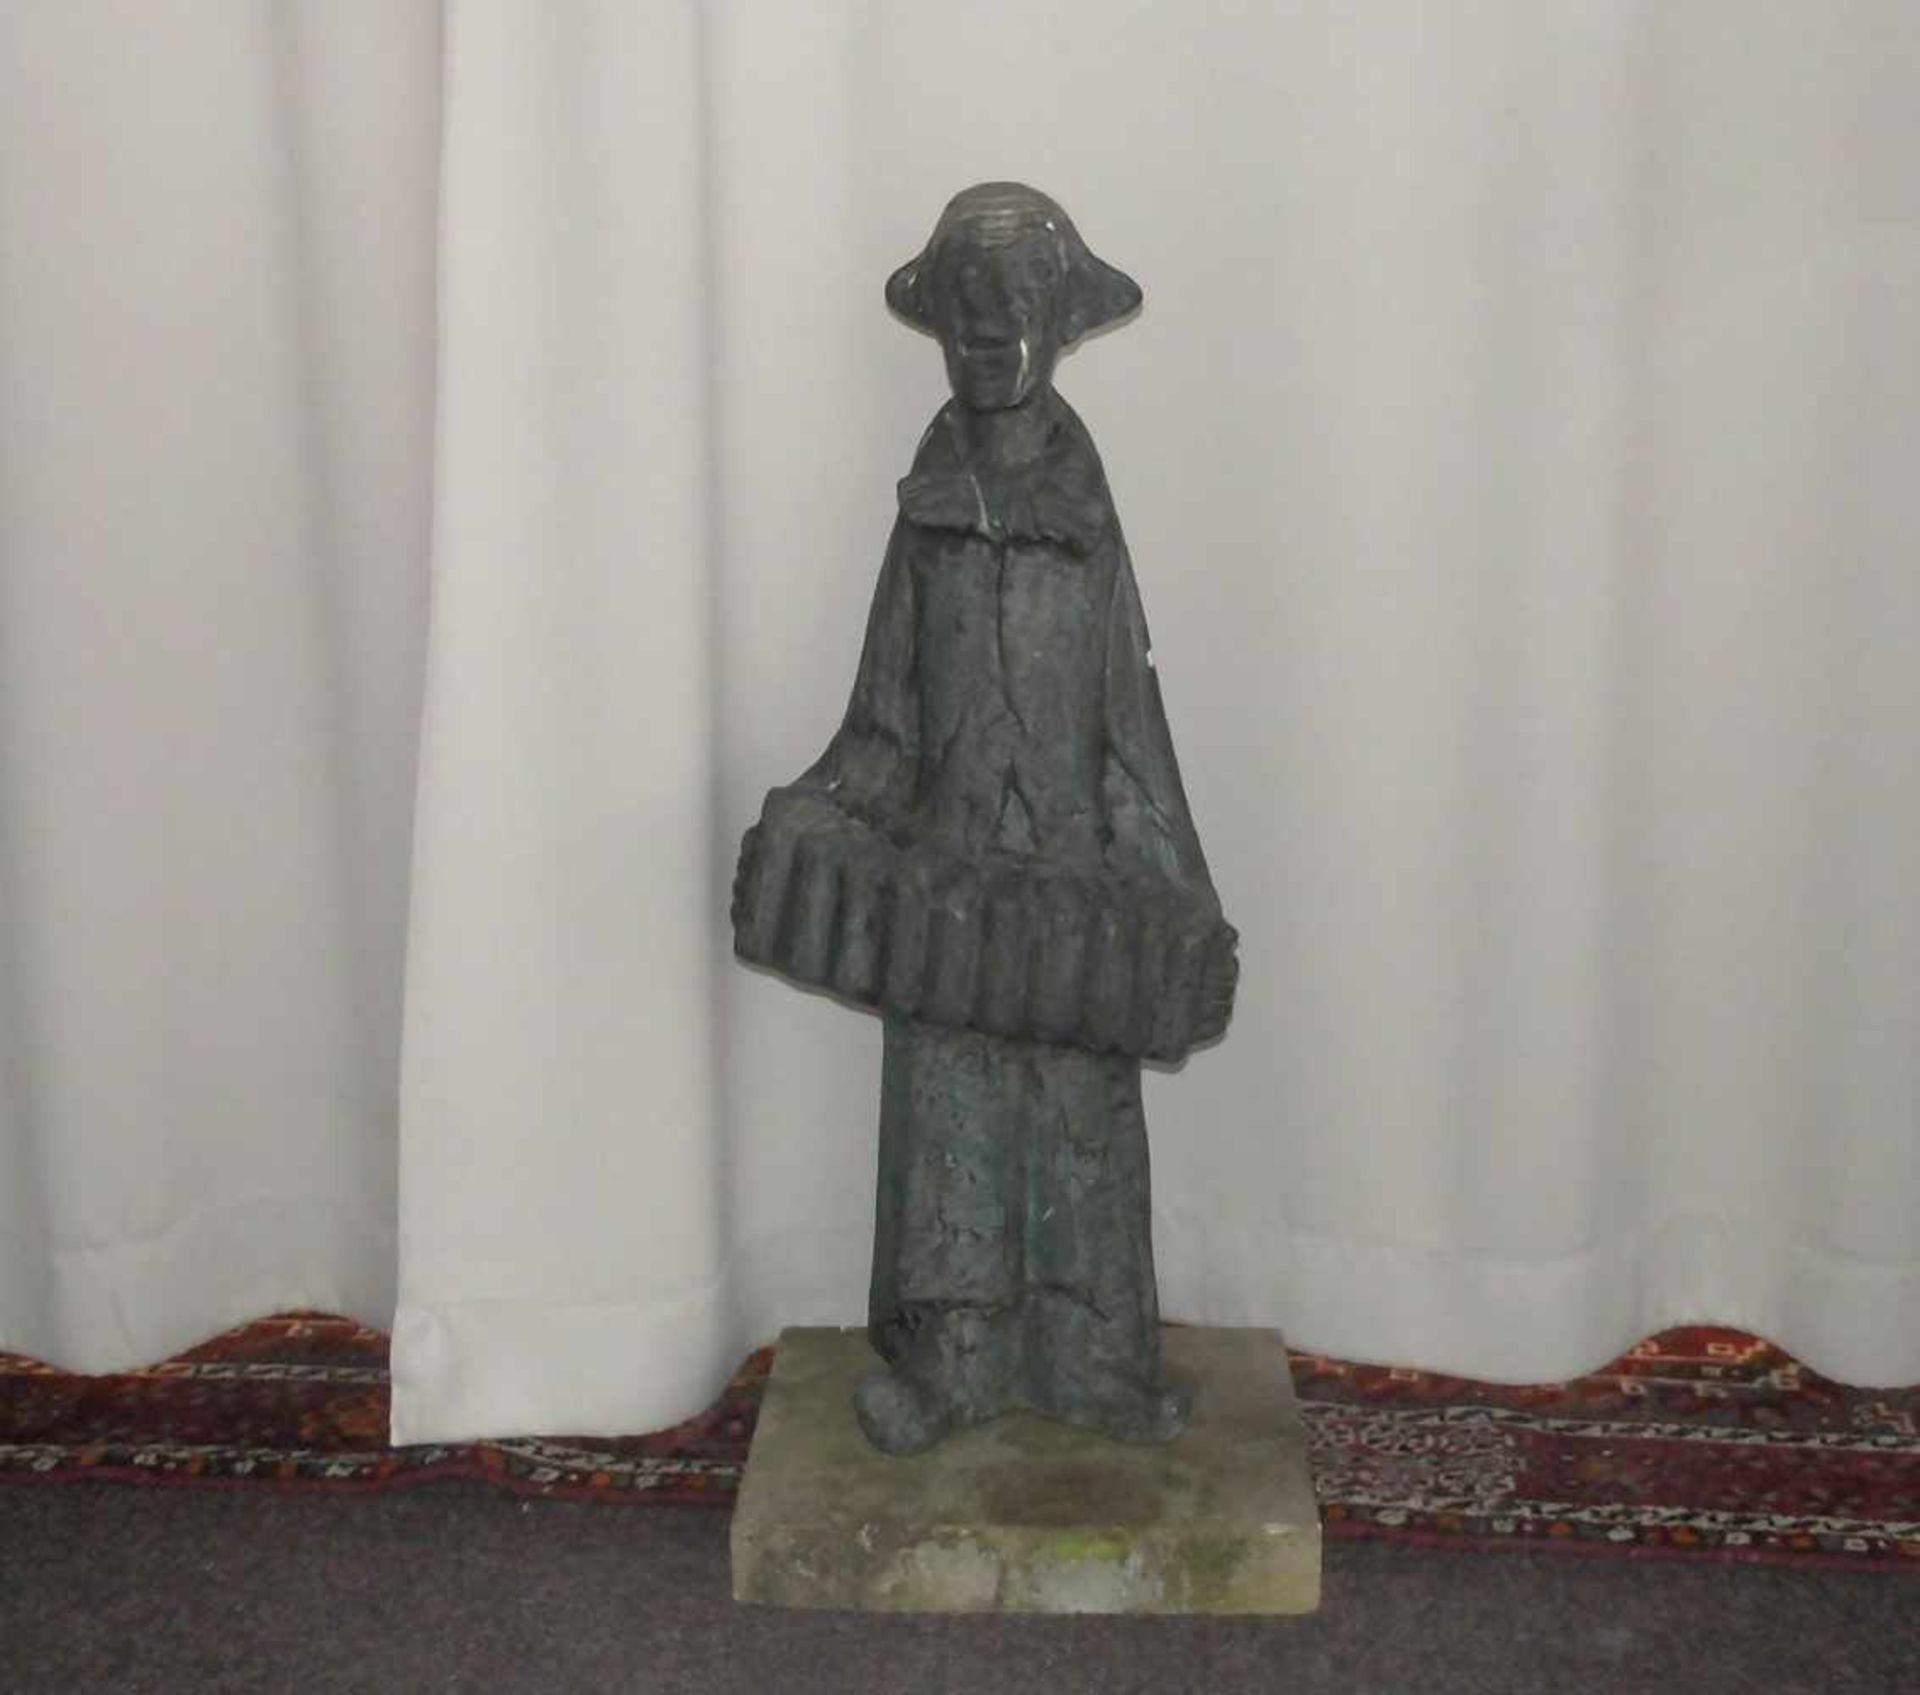 KRAUTWALD, JOSEPH (Borkenstadt / Oberschlesien 1914-2003 Rheine), Skulptur: "Clown mit Akkordeon" (